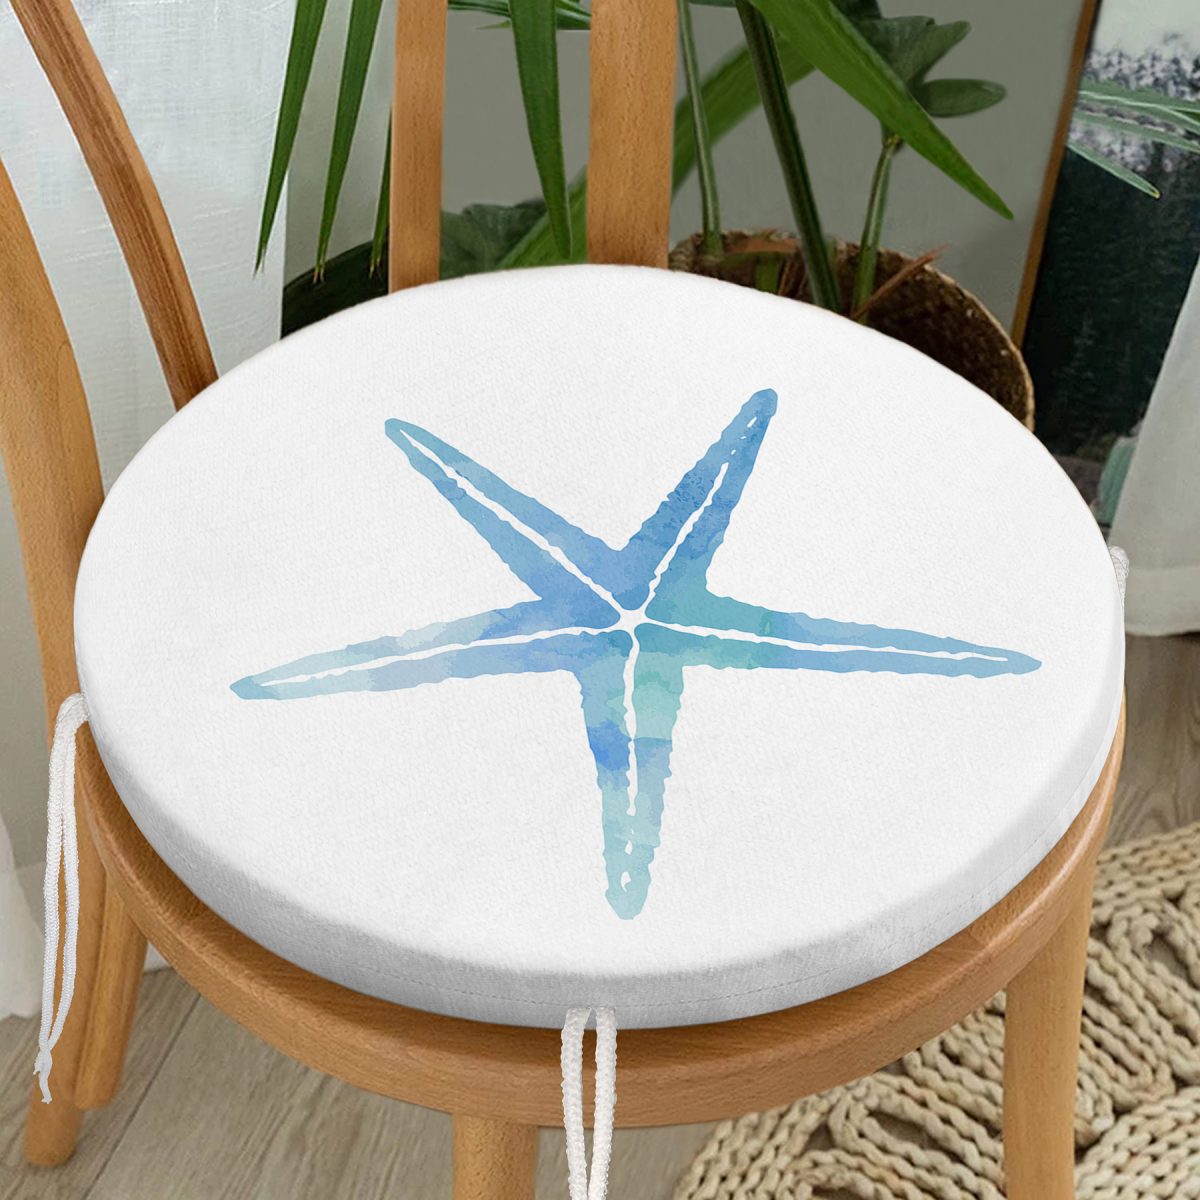 Beyaz Zemin Üzerinde Renkli Deniz Atı Desenli Dijital Baskılı Modern Yuvarlak Fermuarlı Sandalye Minderi Realhomes